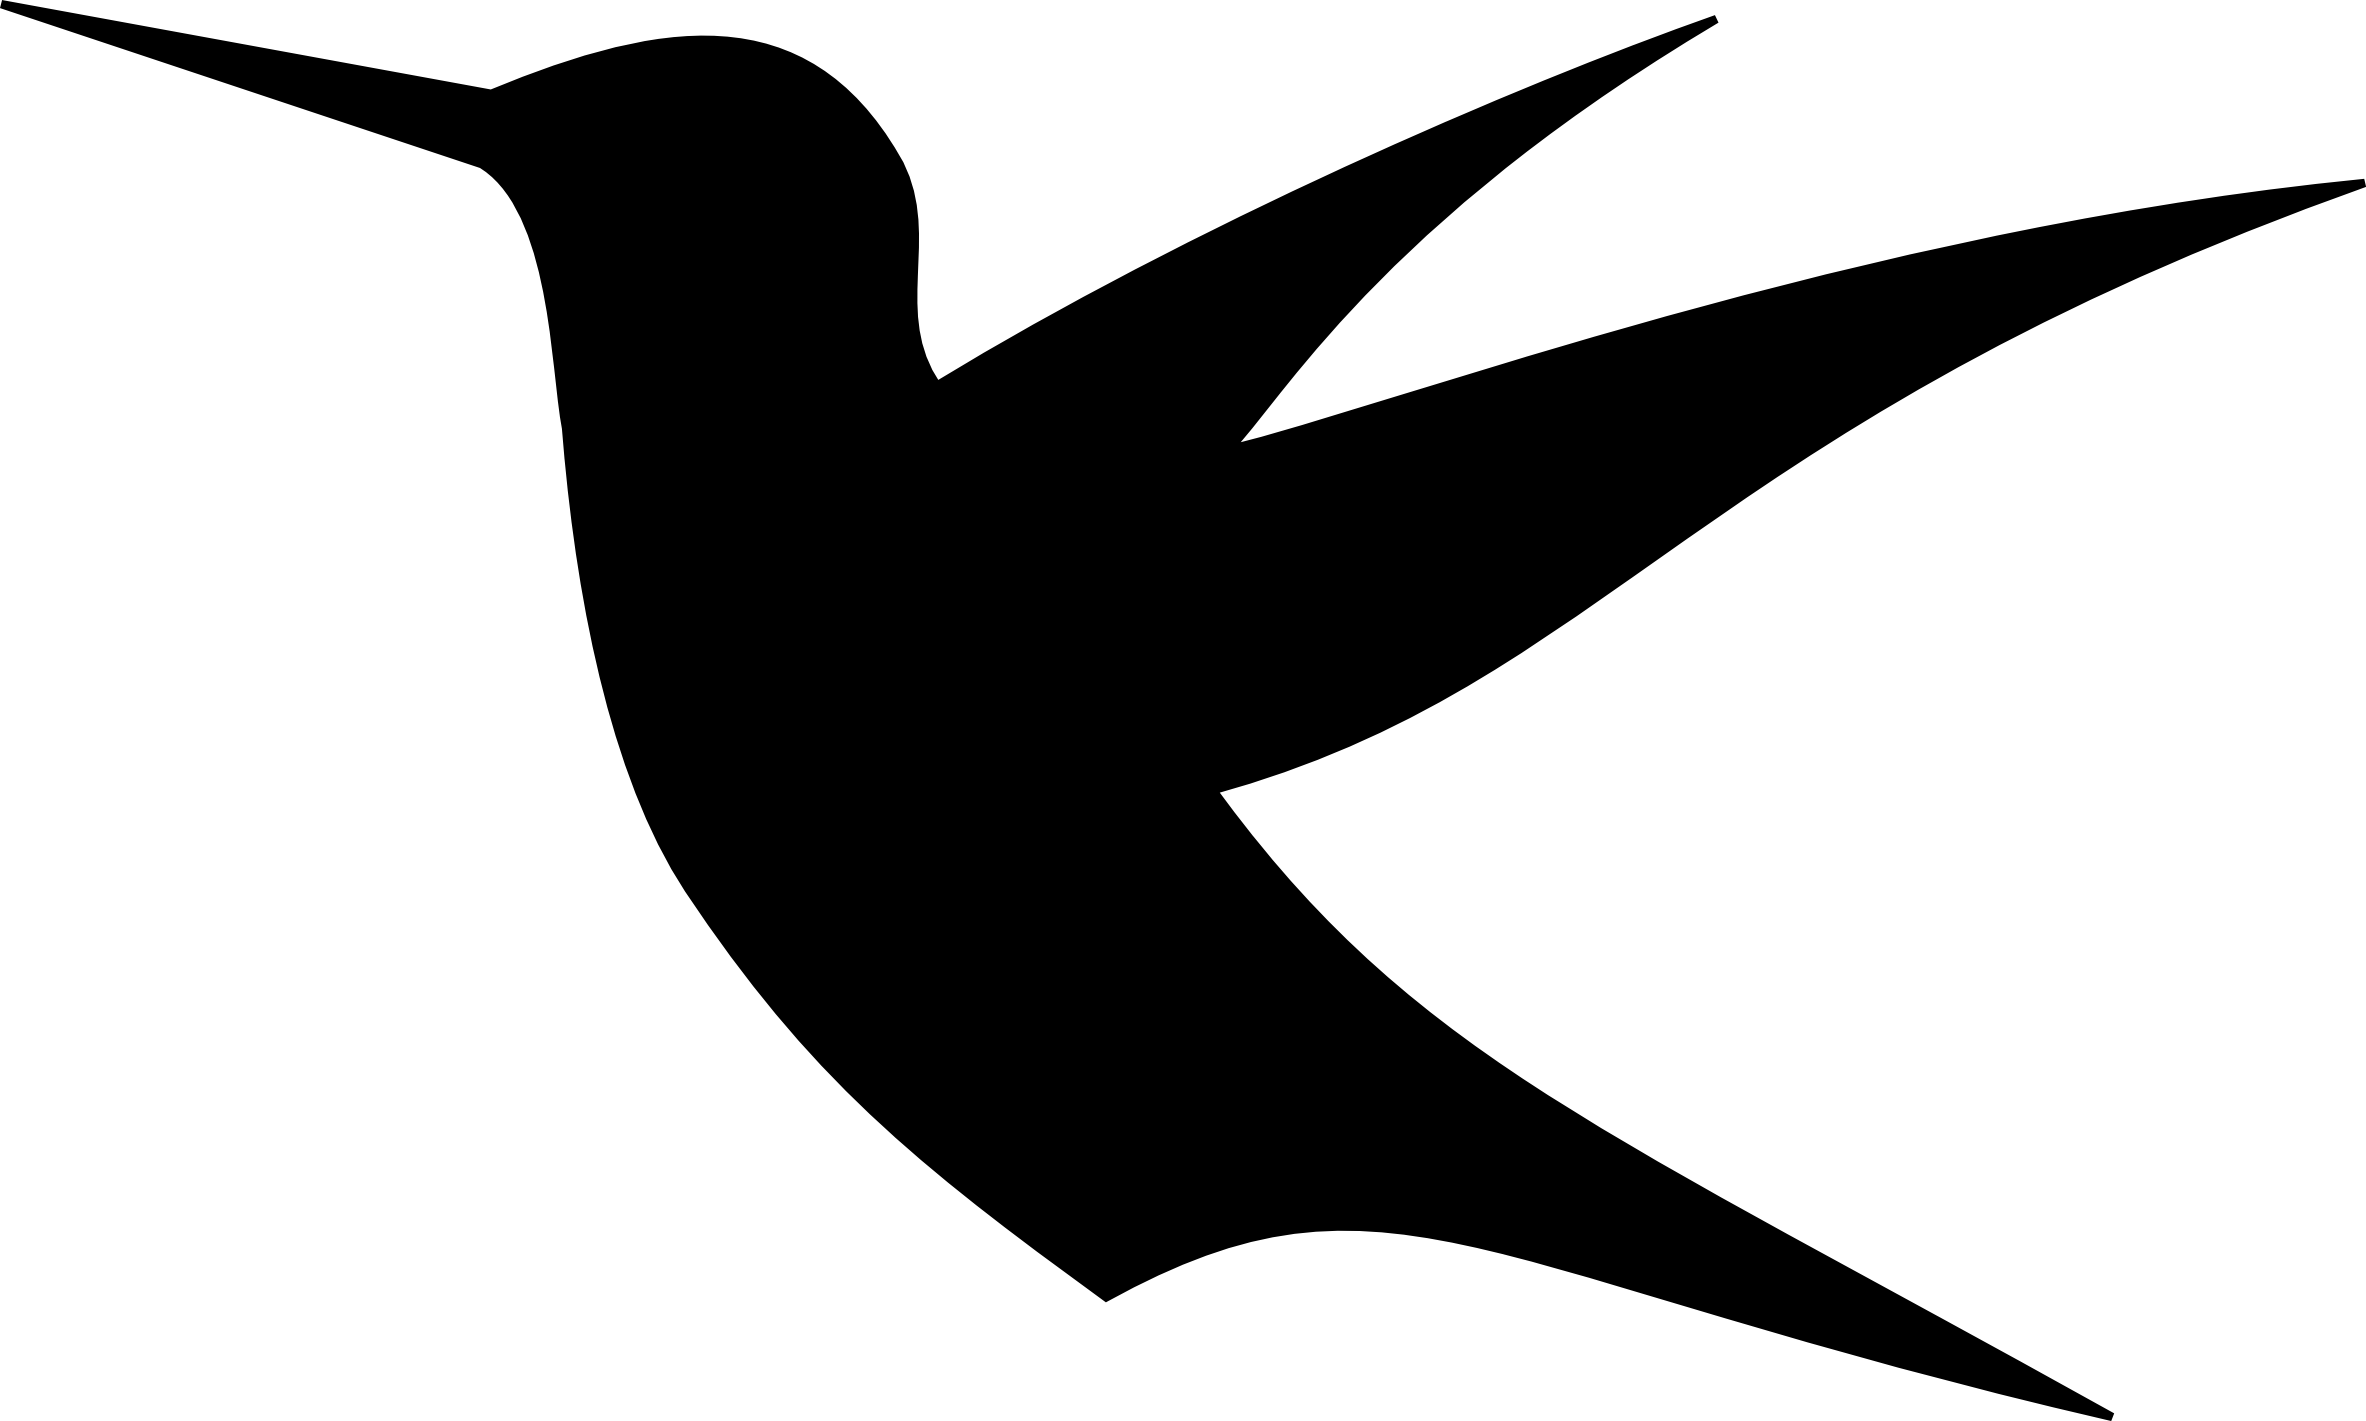 Hummingbird Silhouette - ClipArt Best